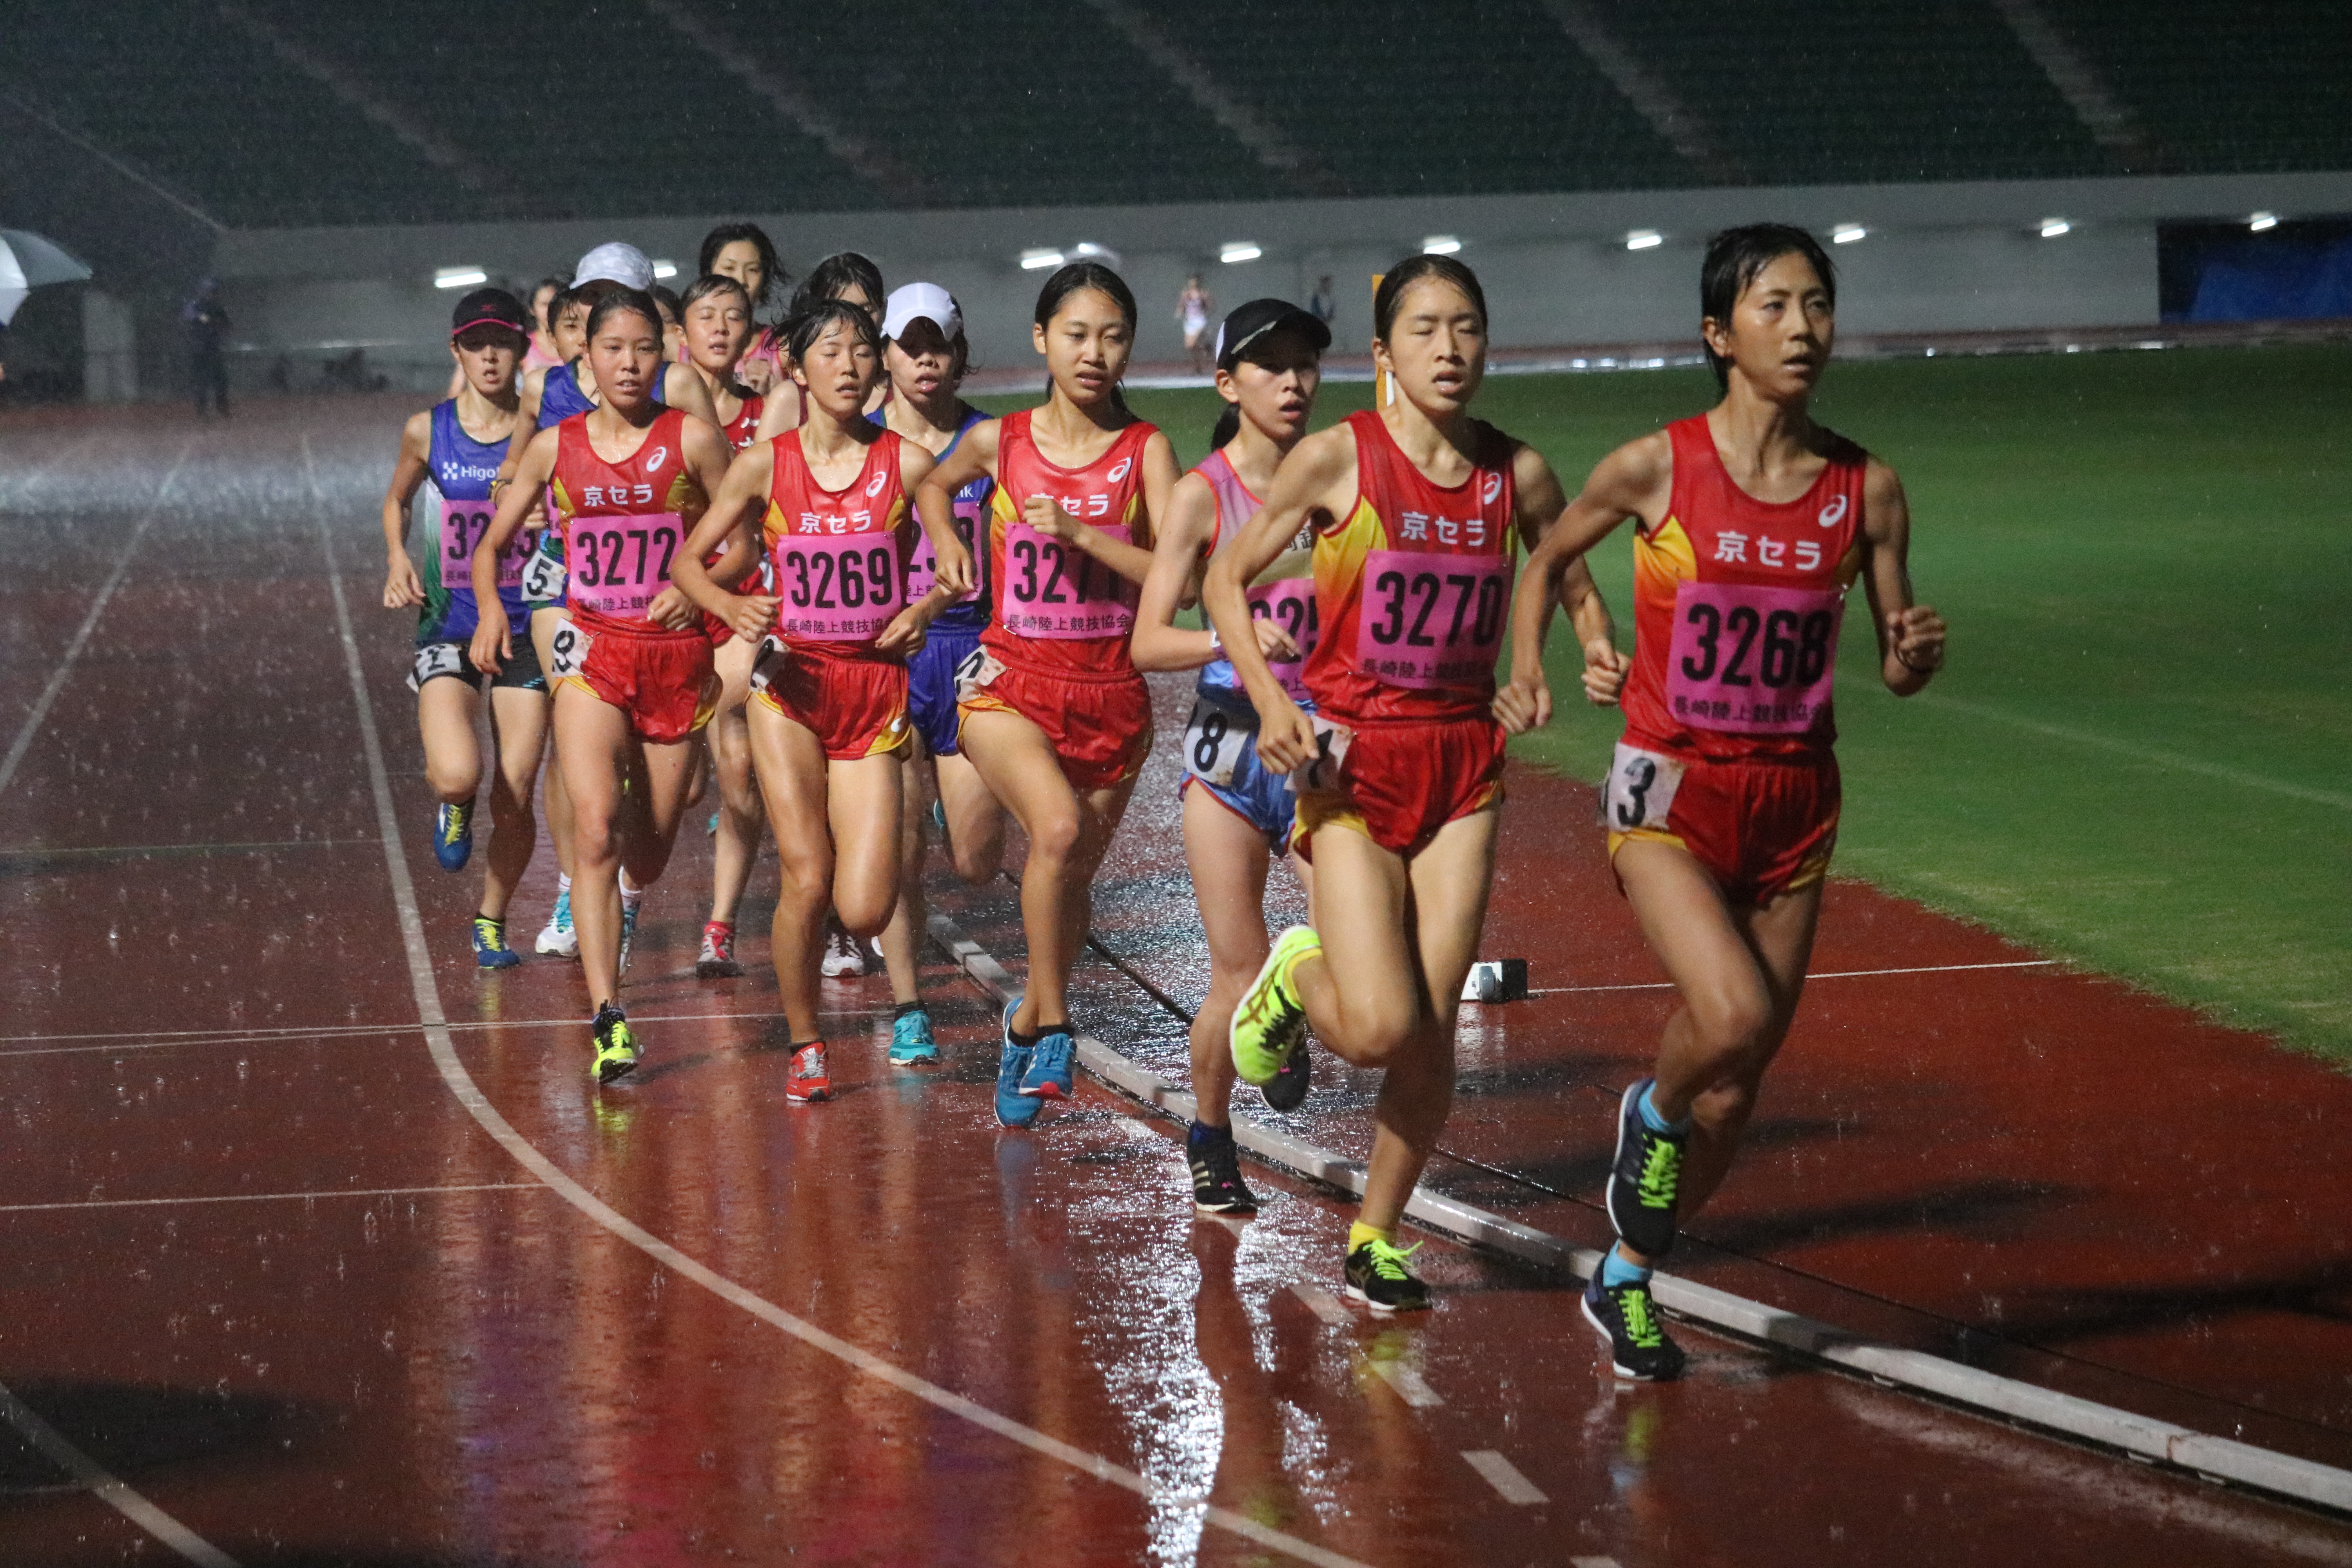 第4回 ナイター記録会 出場選手の結果 京セラ女子陸上競技部 京セラ